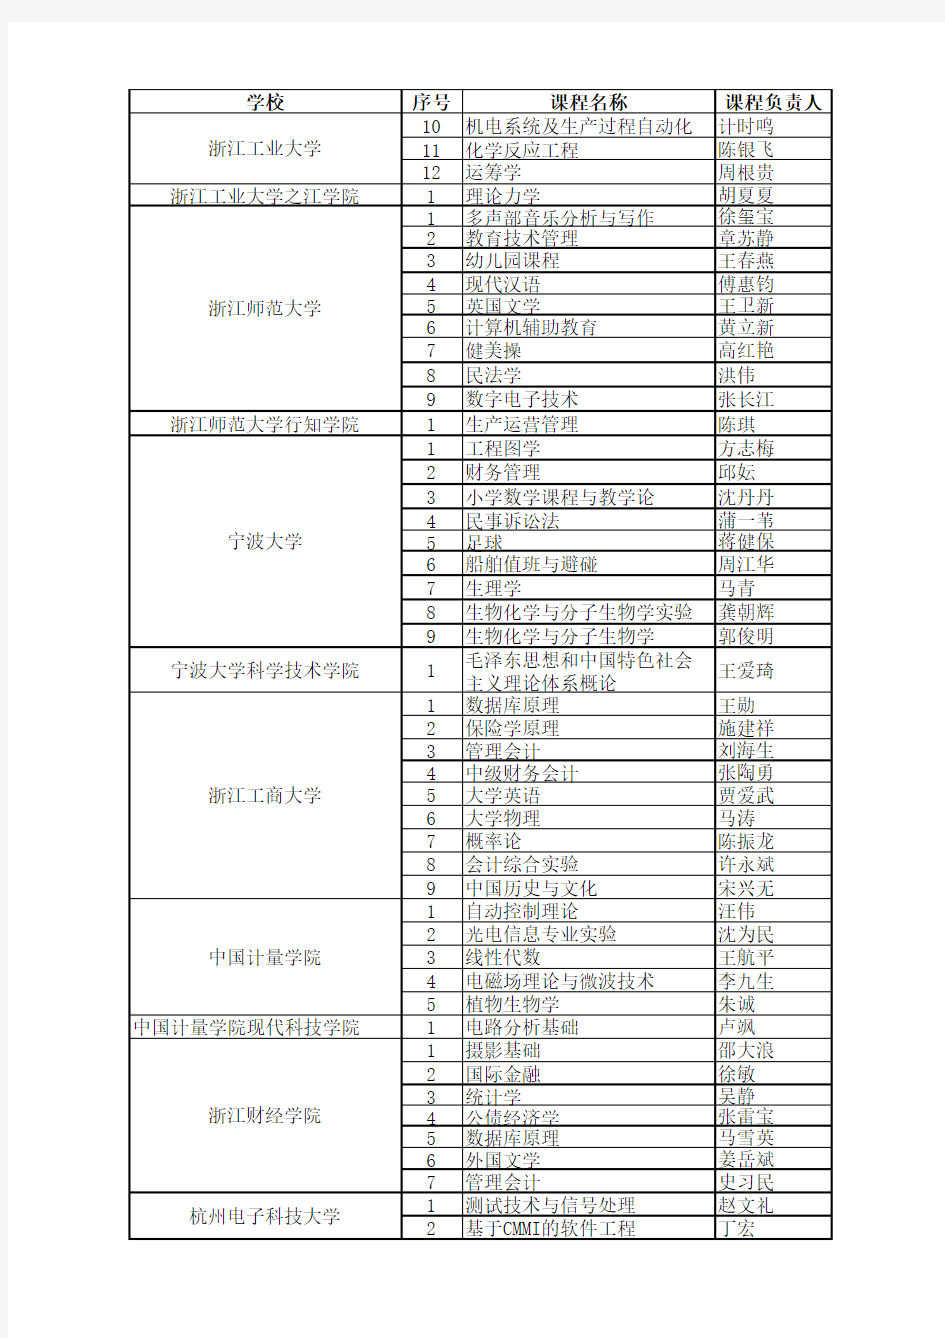 2010年度浙江省普通高校省级精品课程建设项目名单